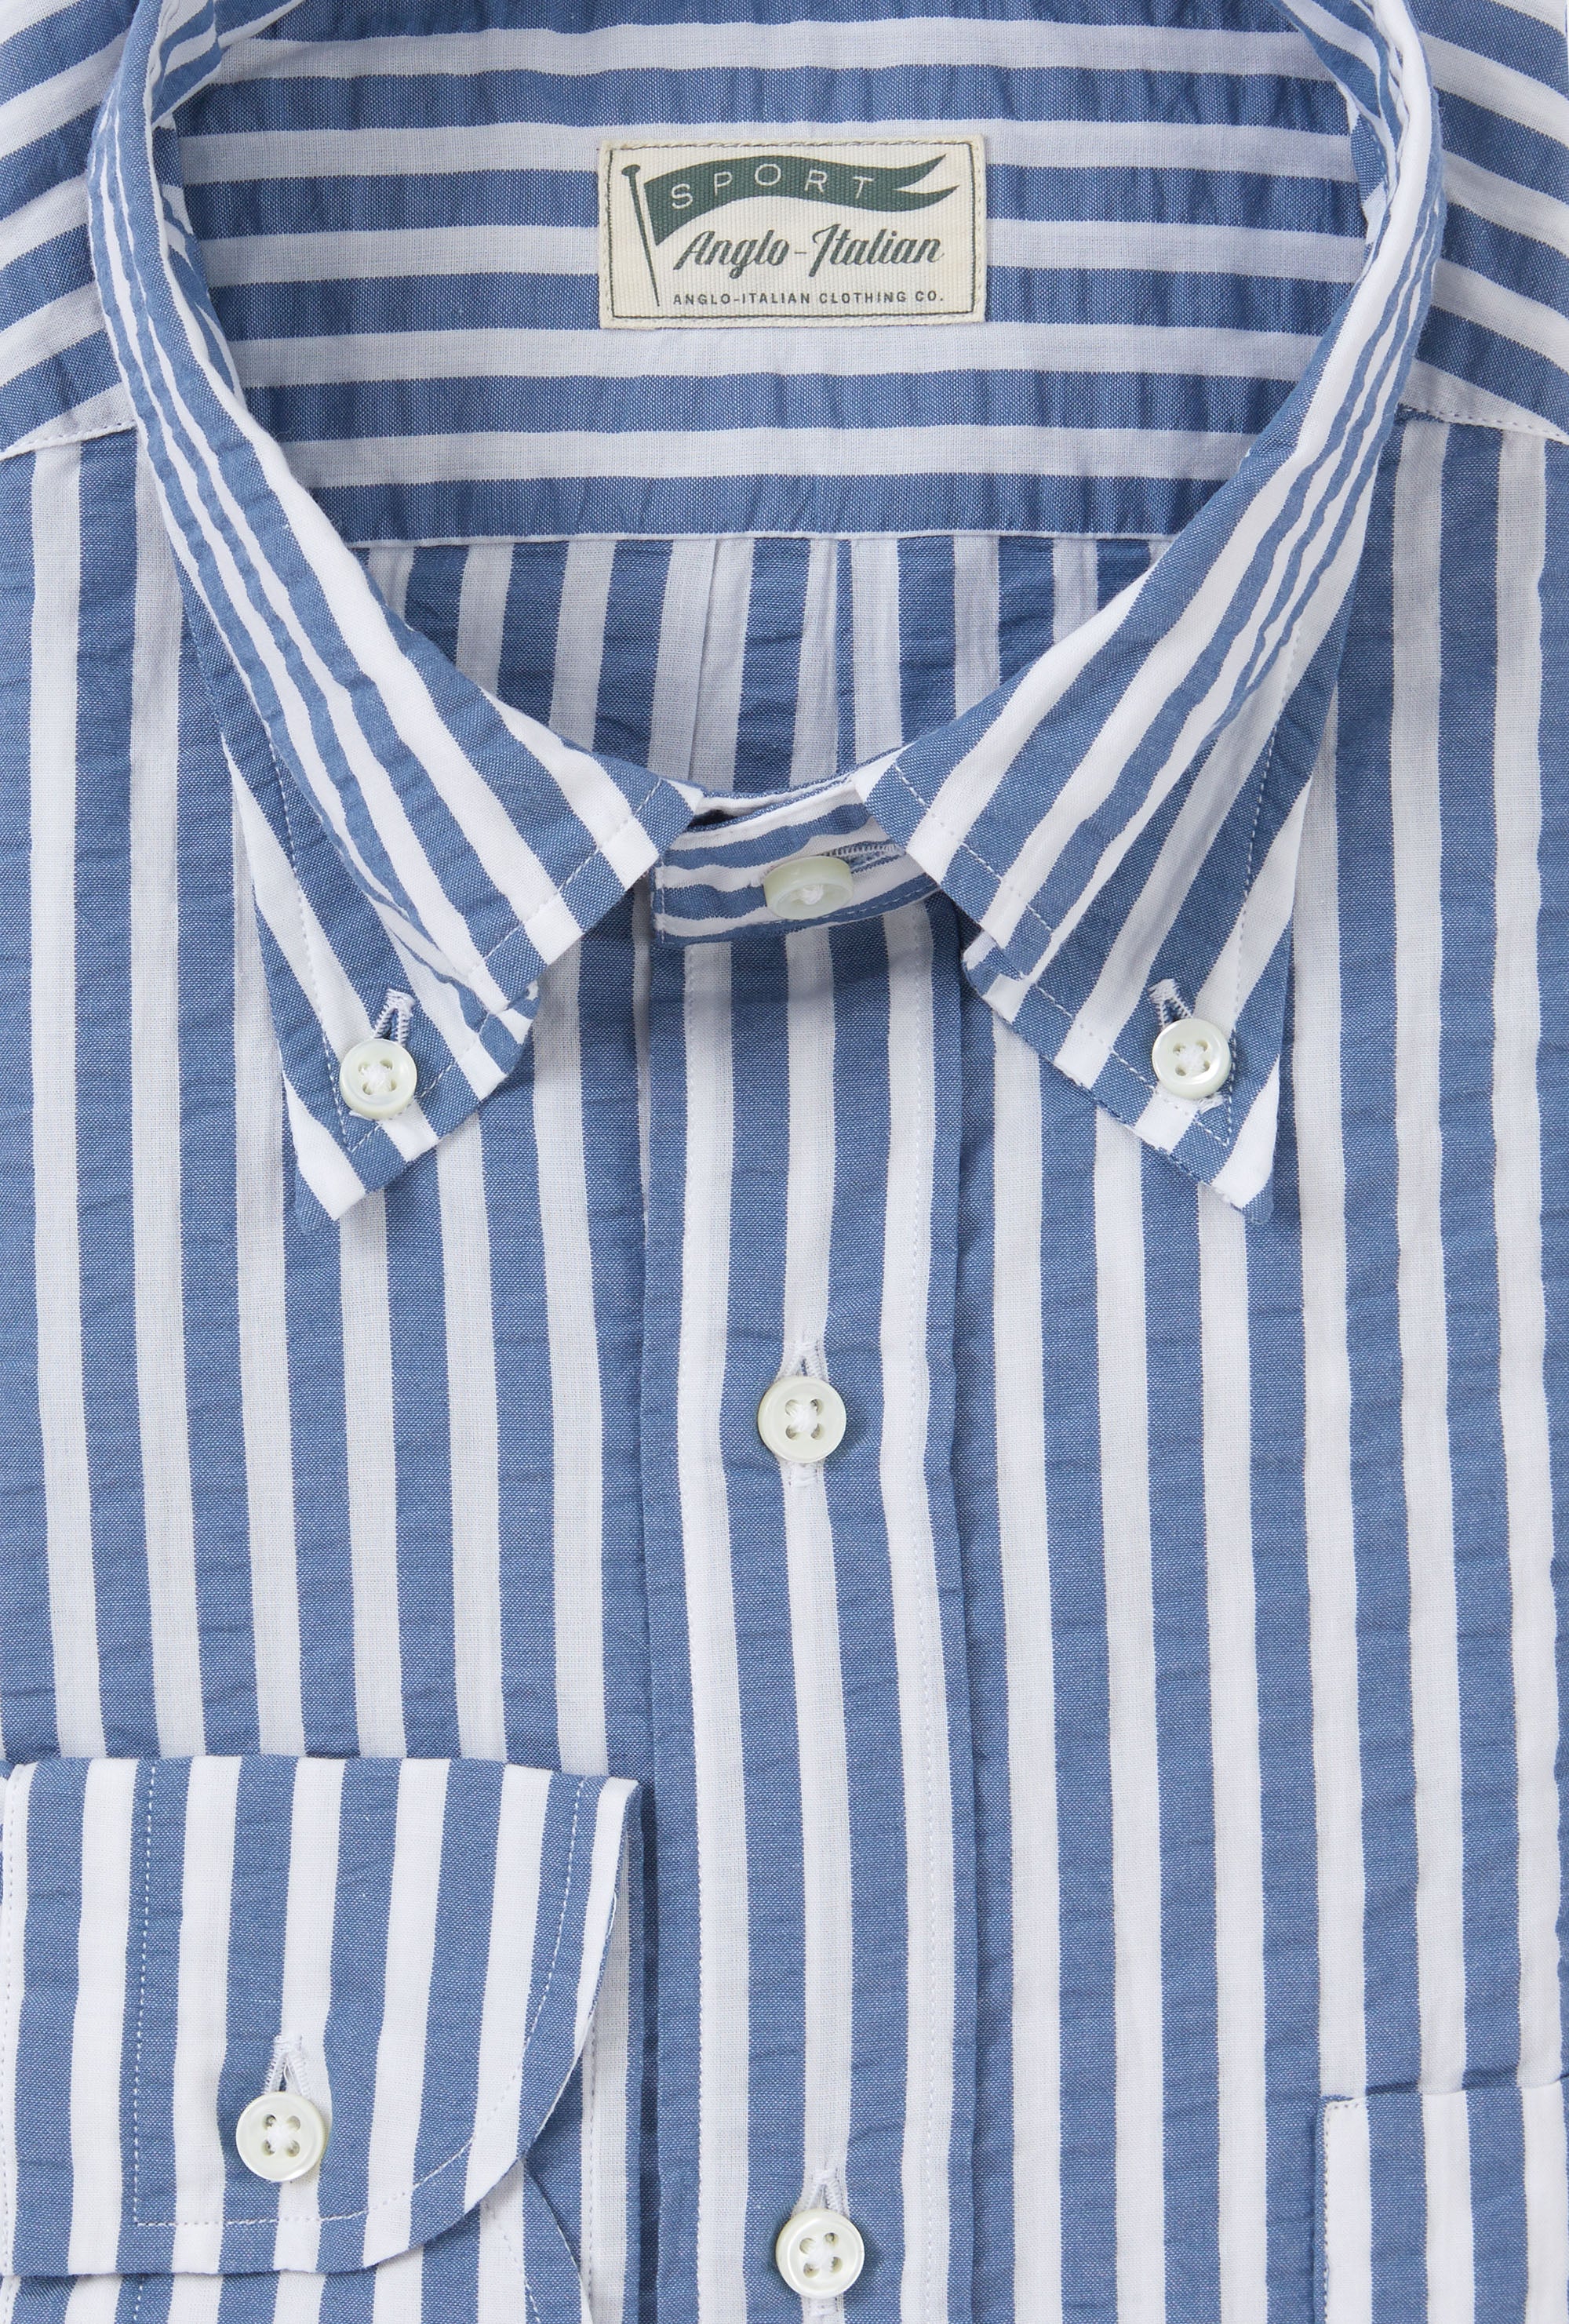 Button Down Sport Shirt Cotton Seersucker Blue Stripe